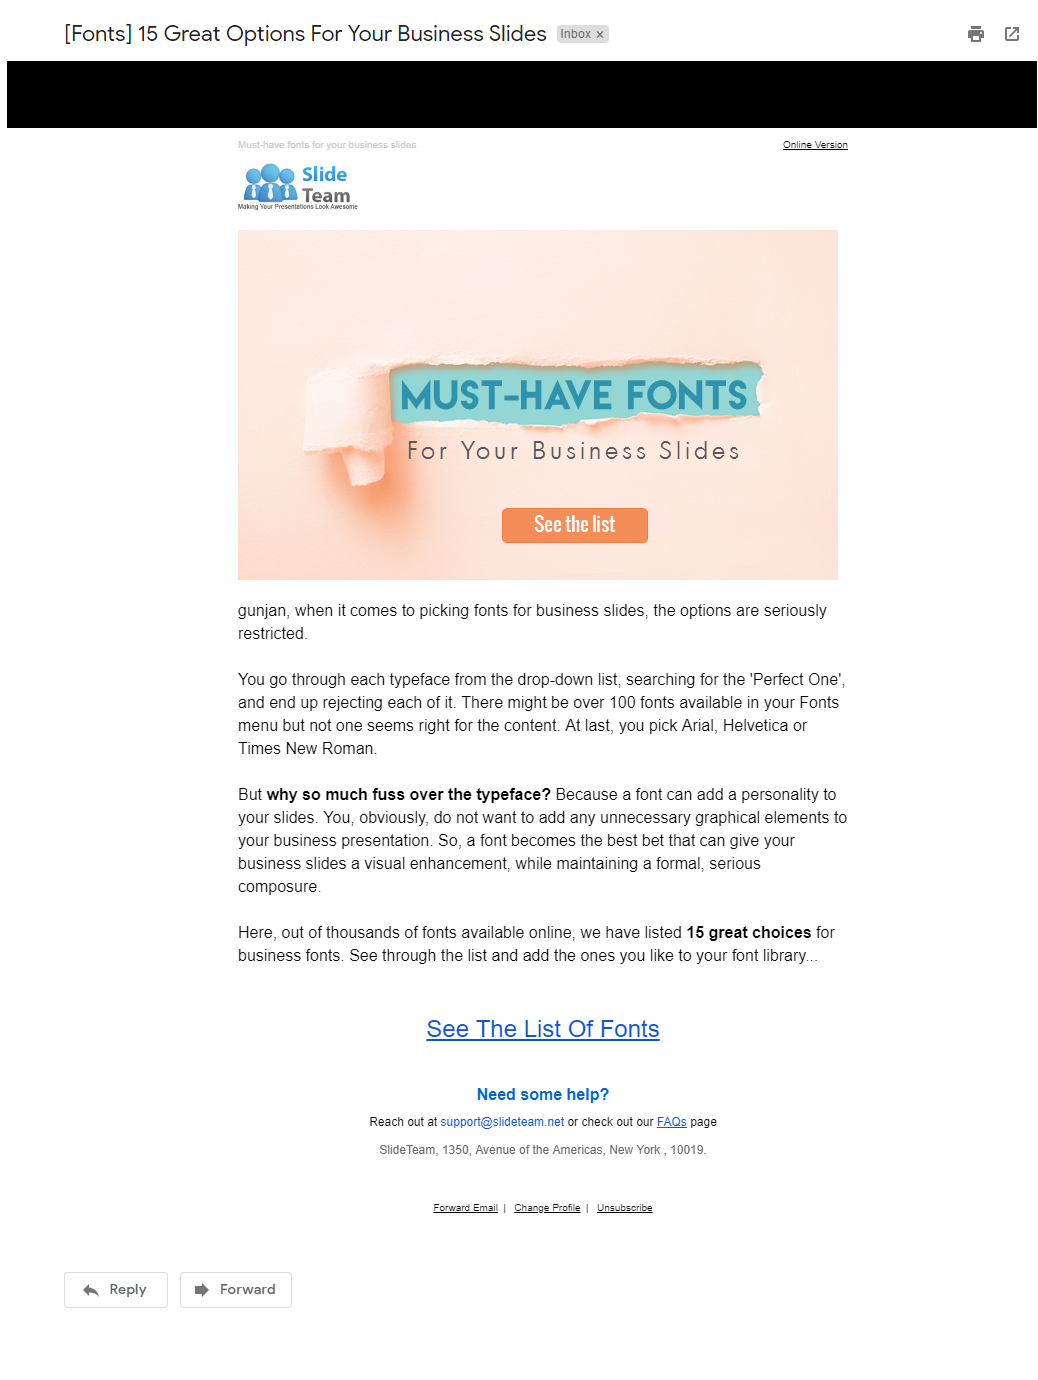 Innovative Newsletter sent by SlideTeam on Fonts 